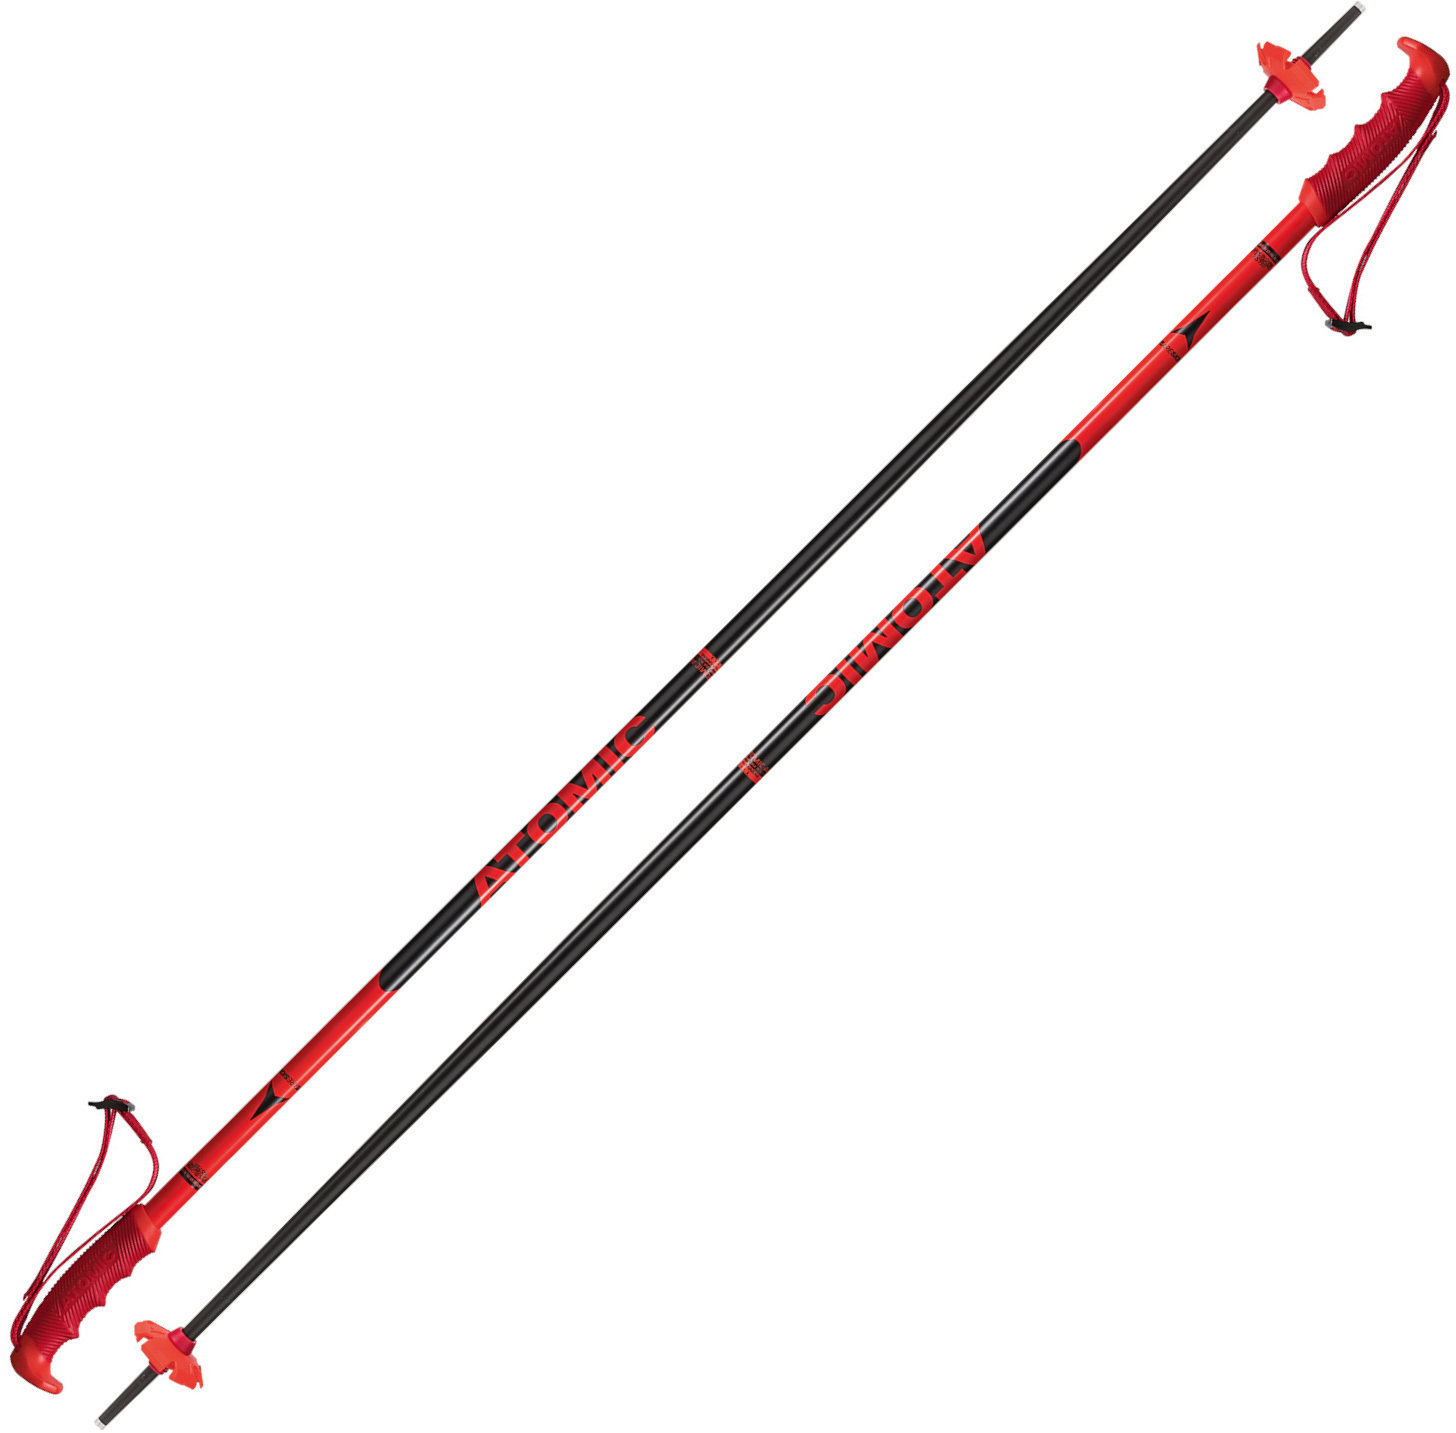 Ski-stokken Atomic Redster Red/Black 130 cm Ski-stokken